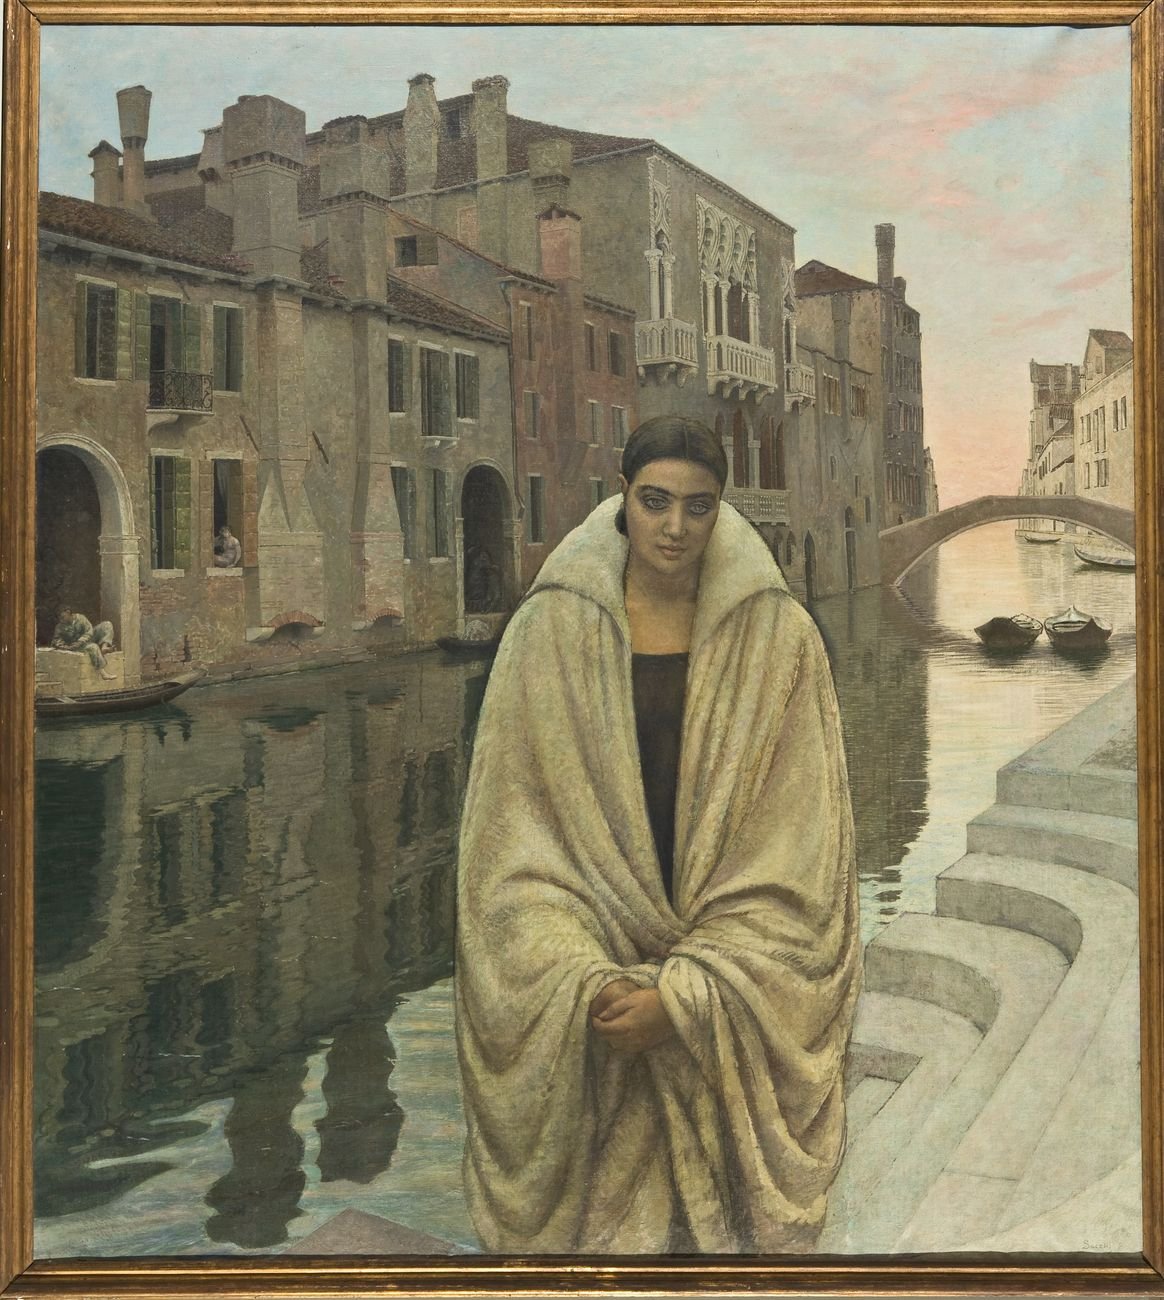 Bortolo Sacchi, La straniera, 1928. Courtesy Museo Biblioteca Archivio – Bassano del Grappa